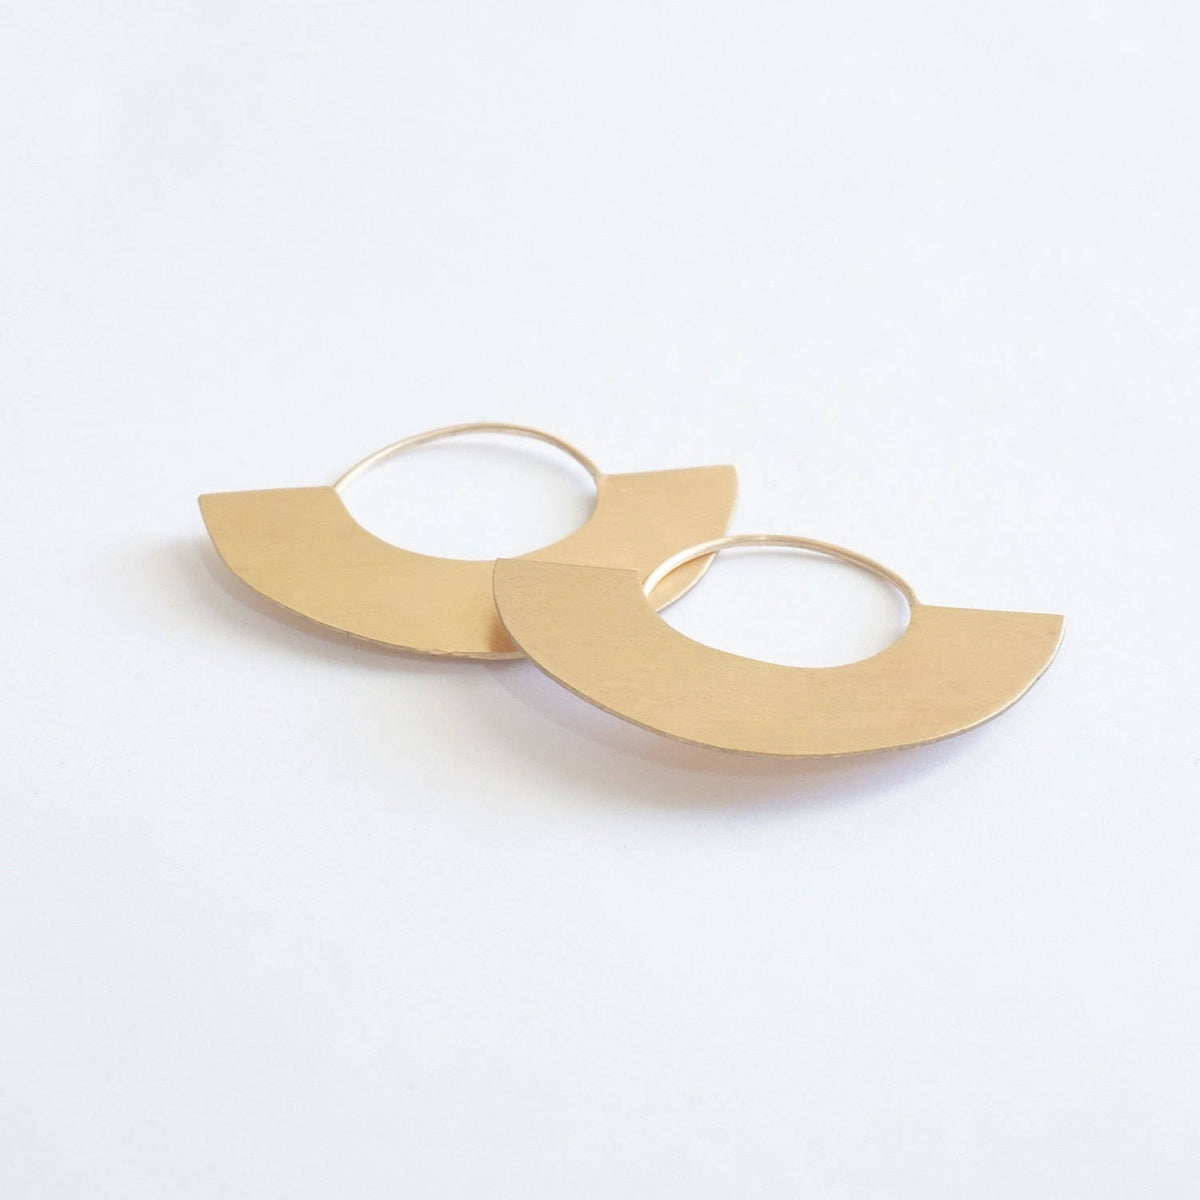 Chic Minimalist Half Circle Hand-Made Dangle Hoop Earrings - 0271 - Virginia Wynne Designs